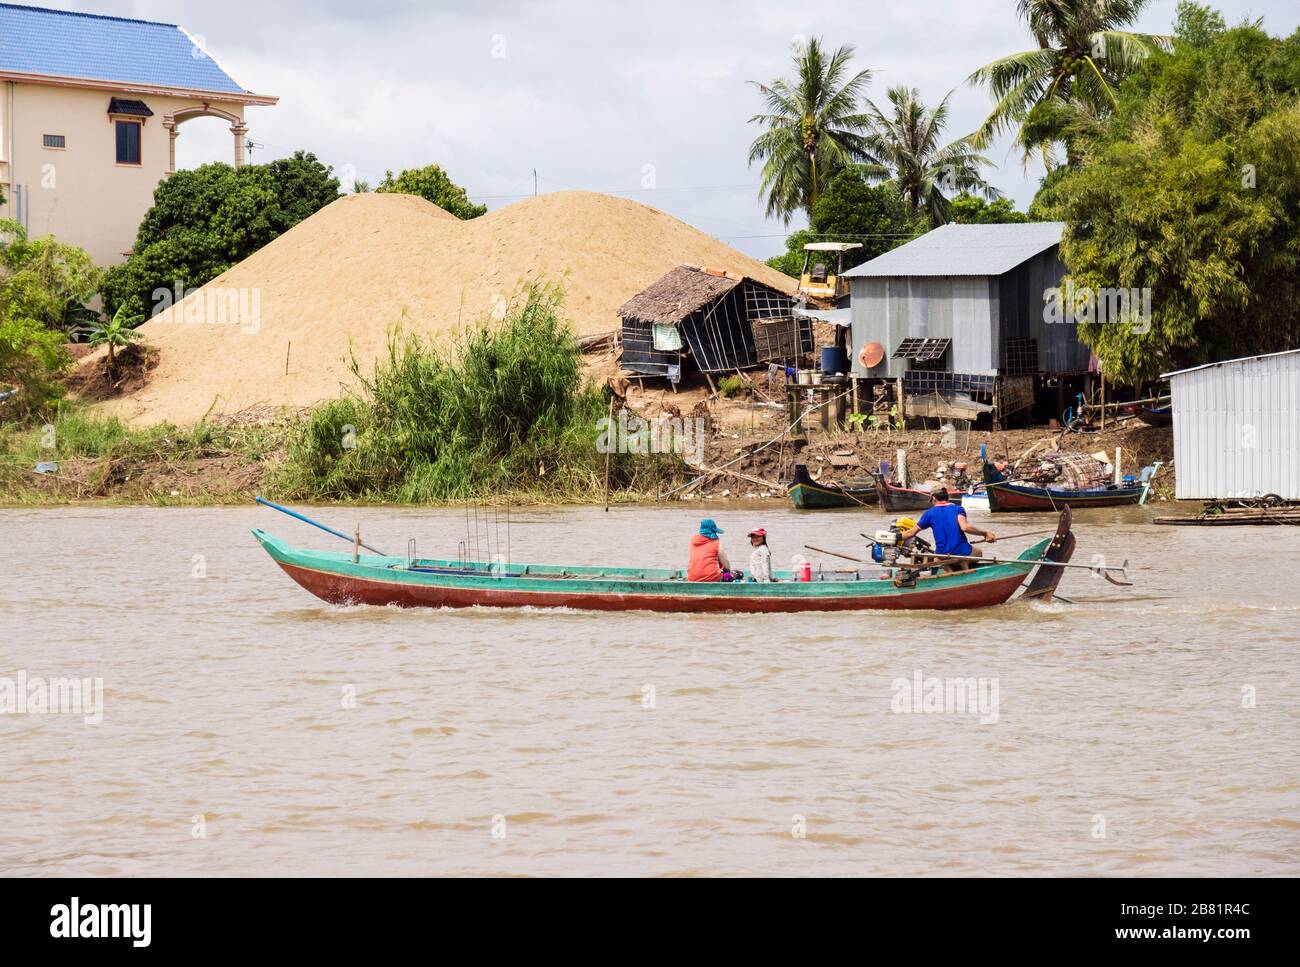 Escena típica con barco de pesca en el pueblo a lo largo del río Mekong. Delta del Mekong, Camboya, sudeste de Asia Foto de stock